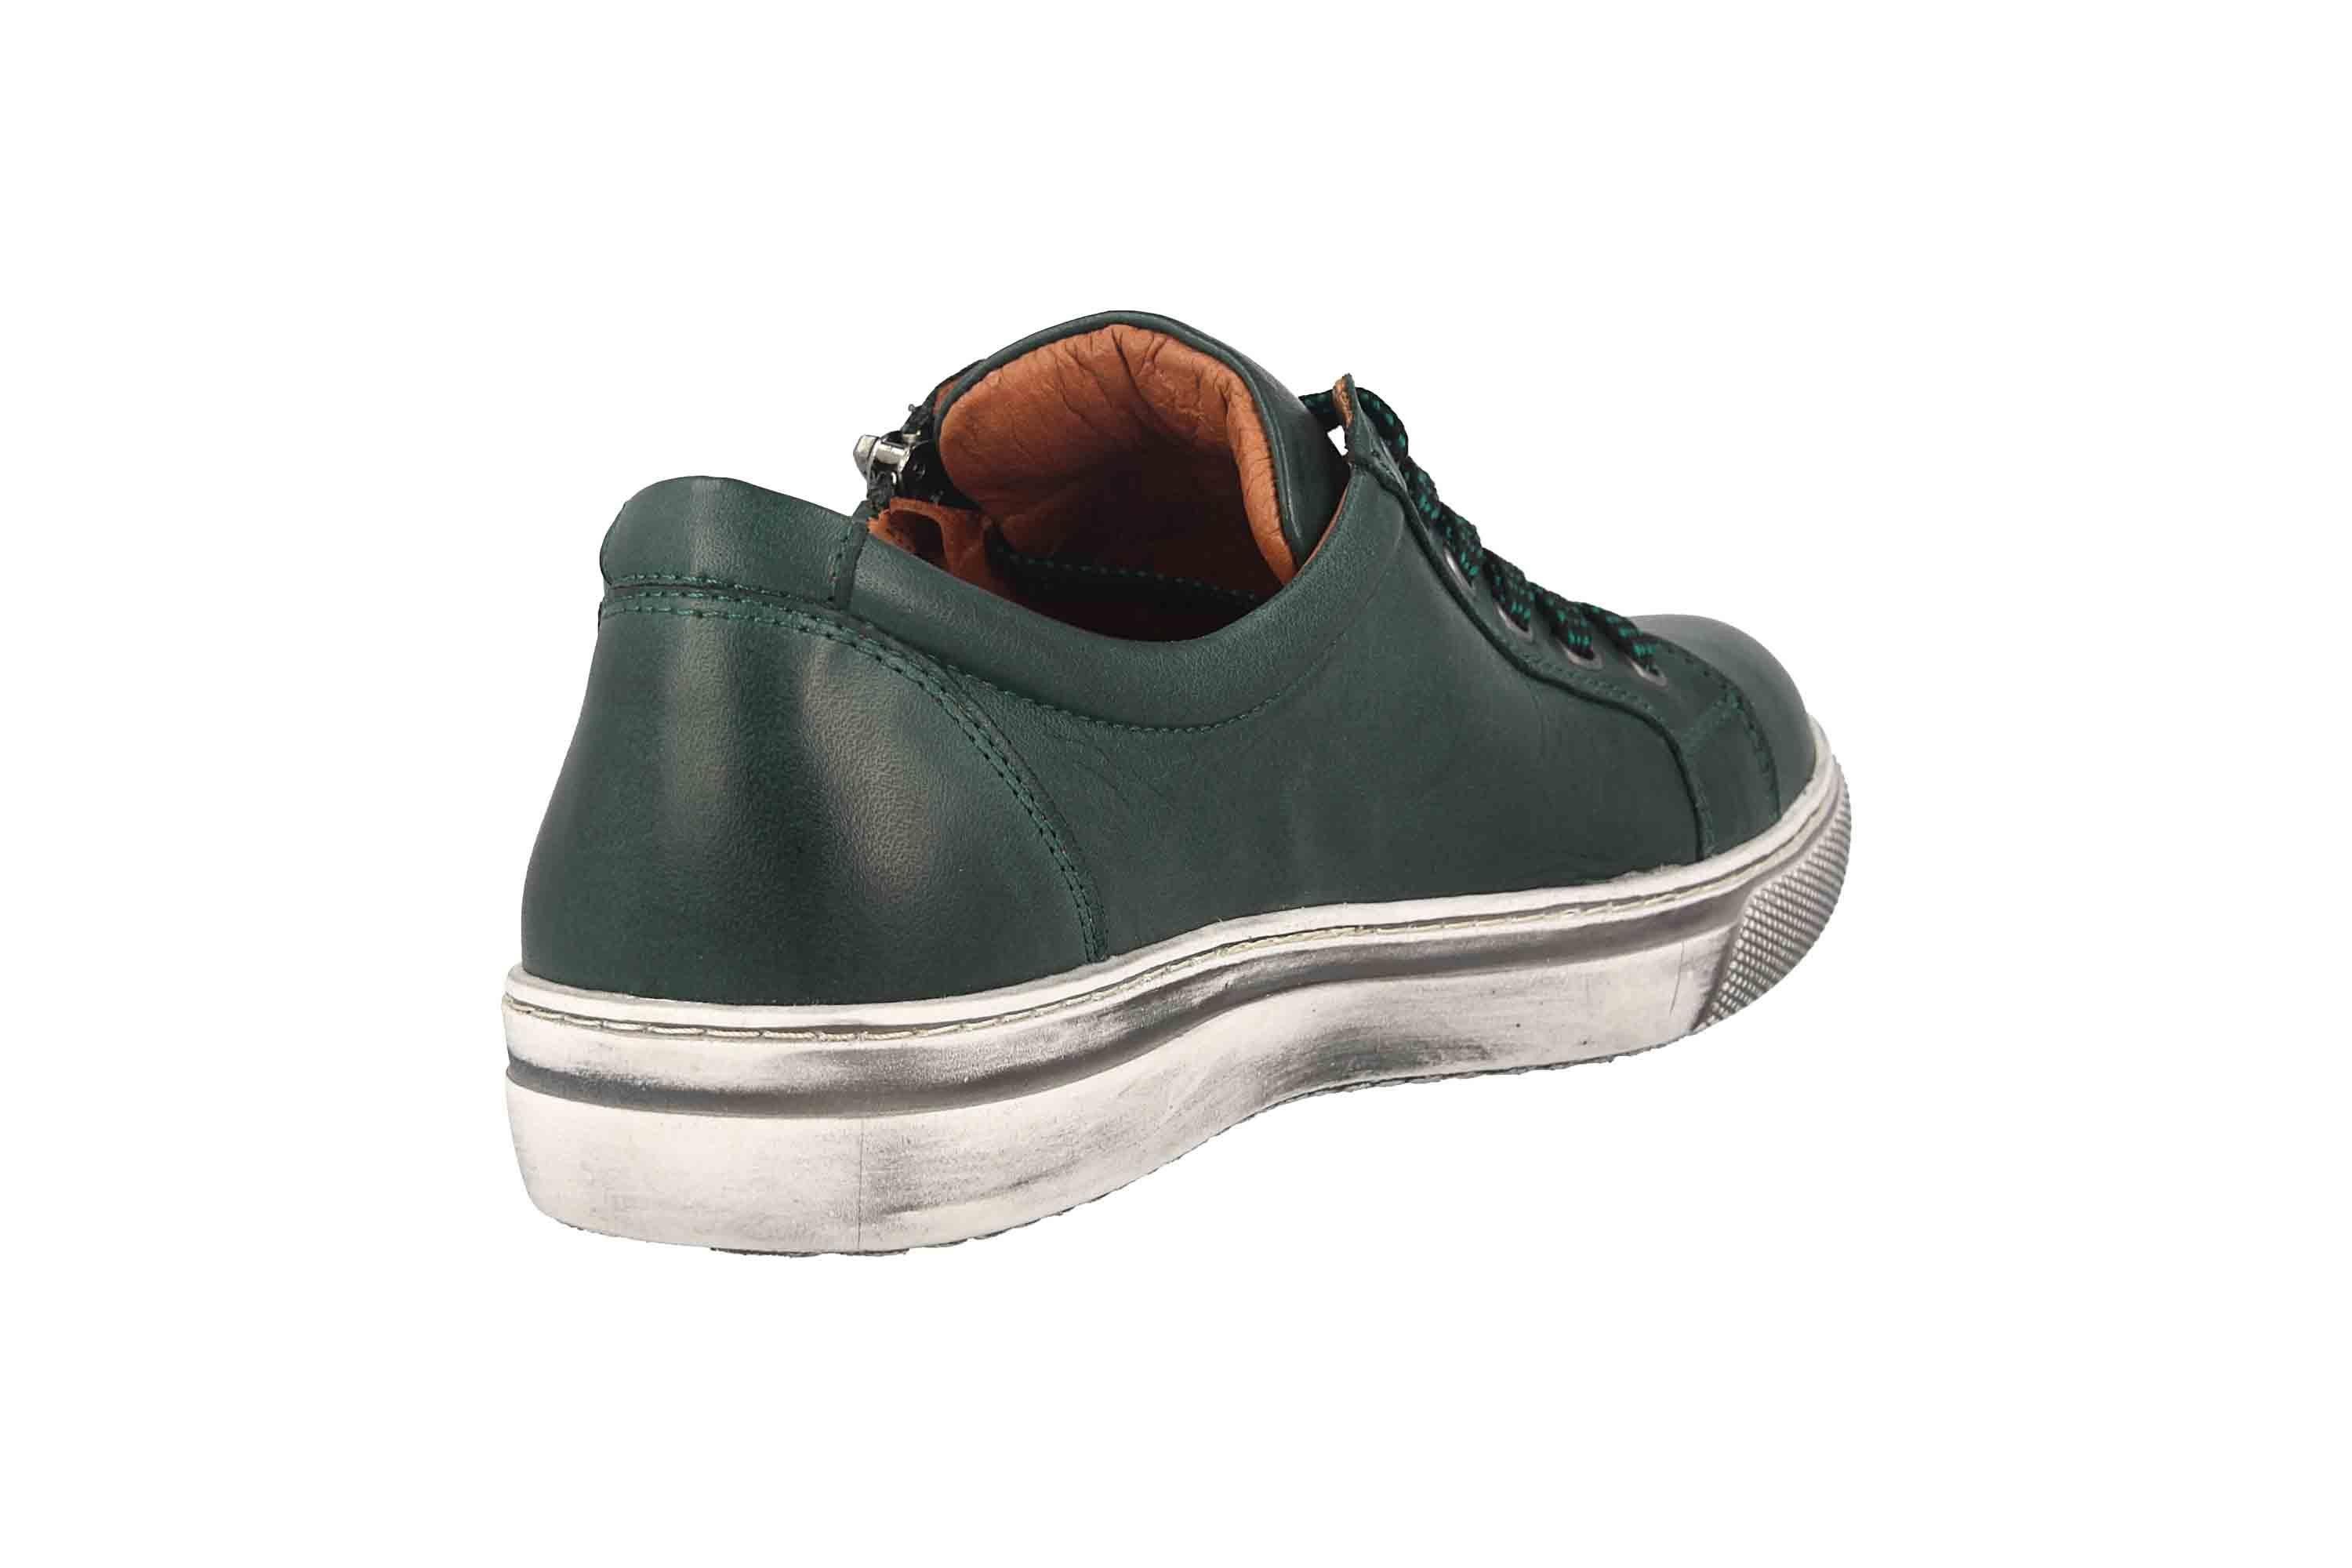 Schuhe Halbschuhe COSMOS Comfort Halbschuhe in Übergrößen Schnürschuh